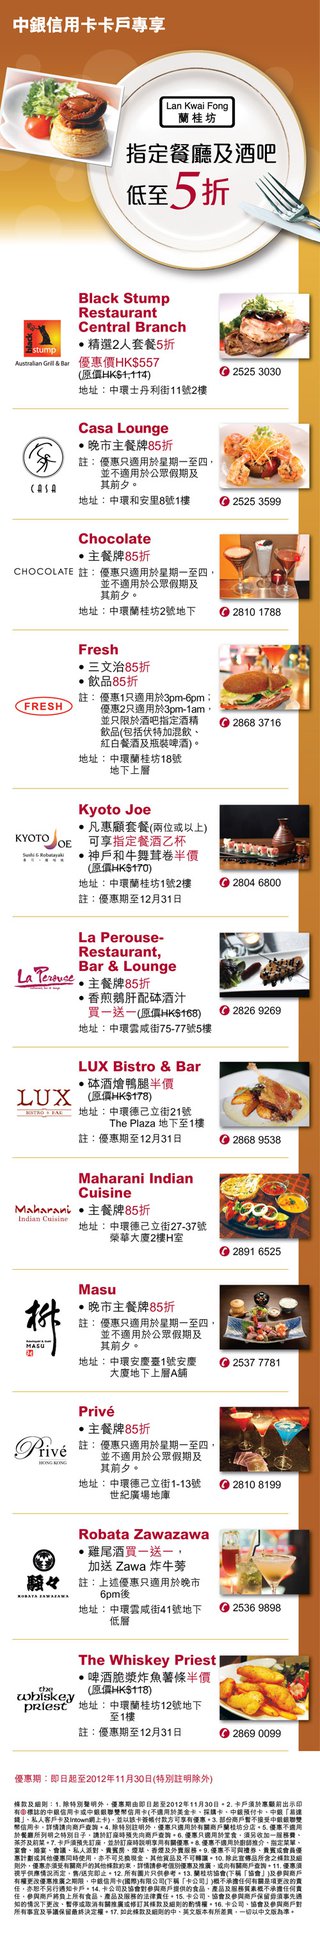 蘭桂坊指定餐廳及酒吧優惠延長 - Casa Lounge